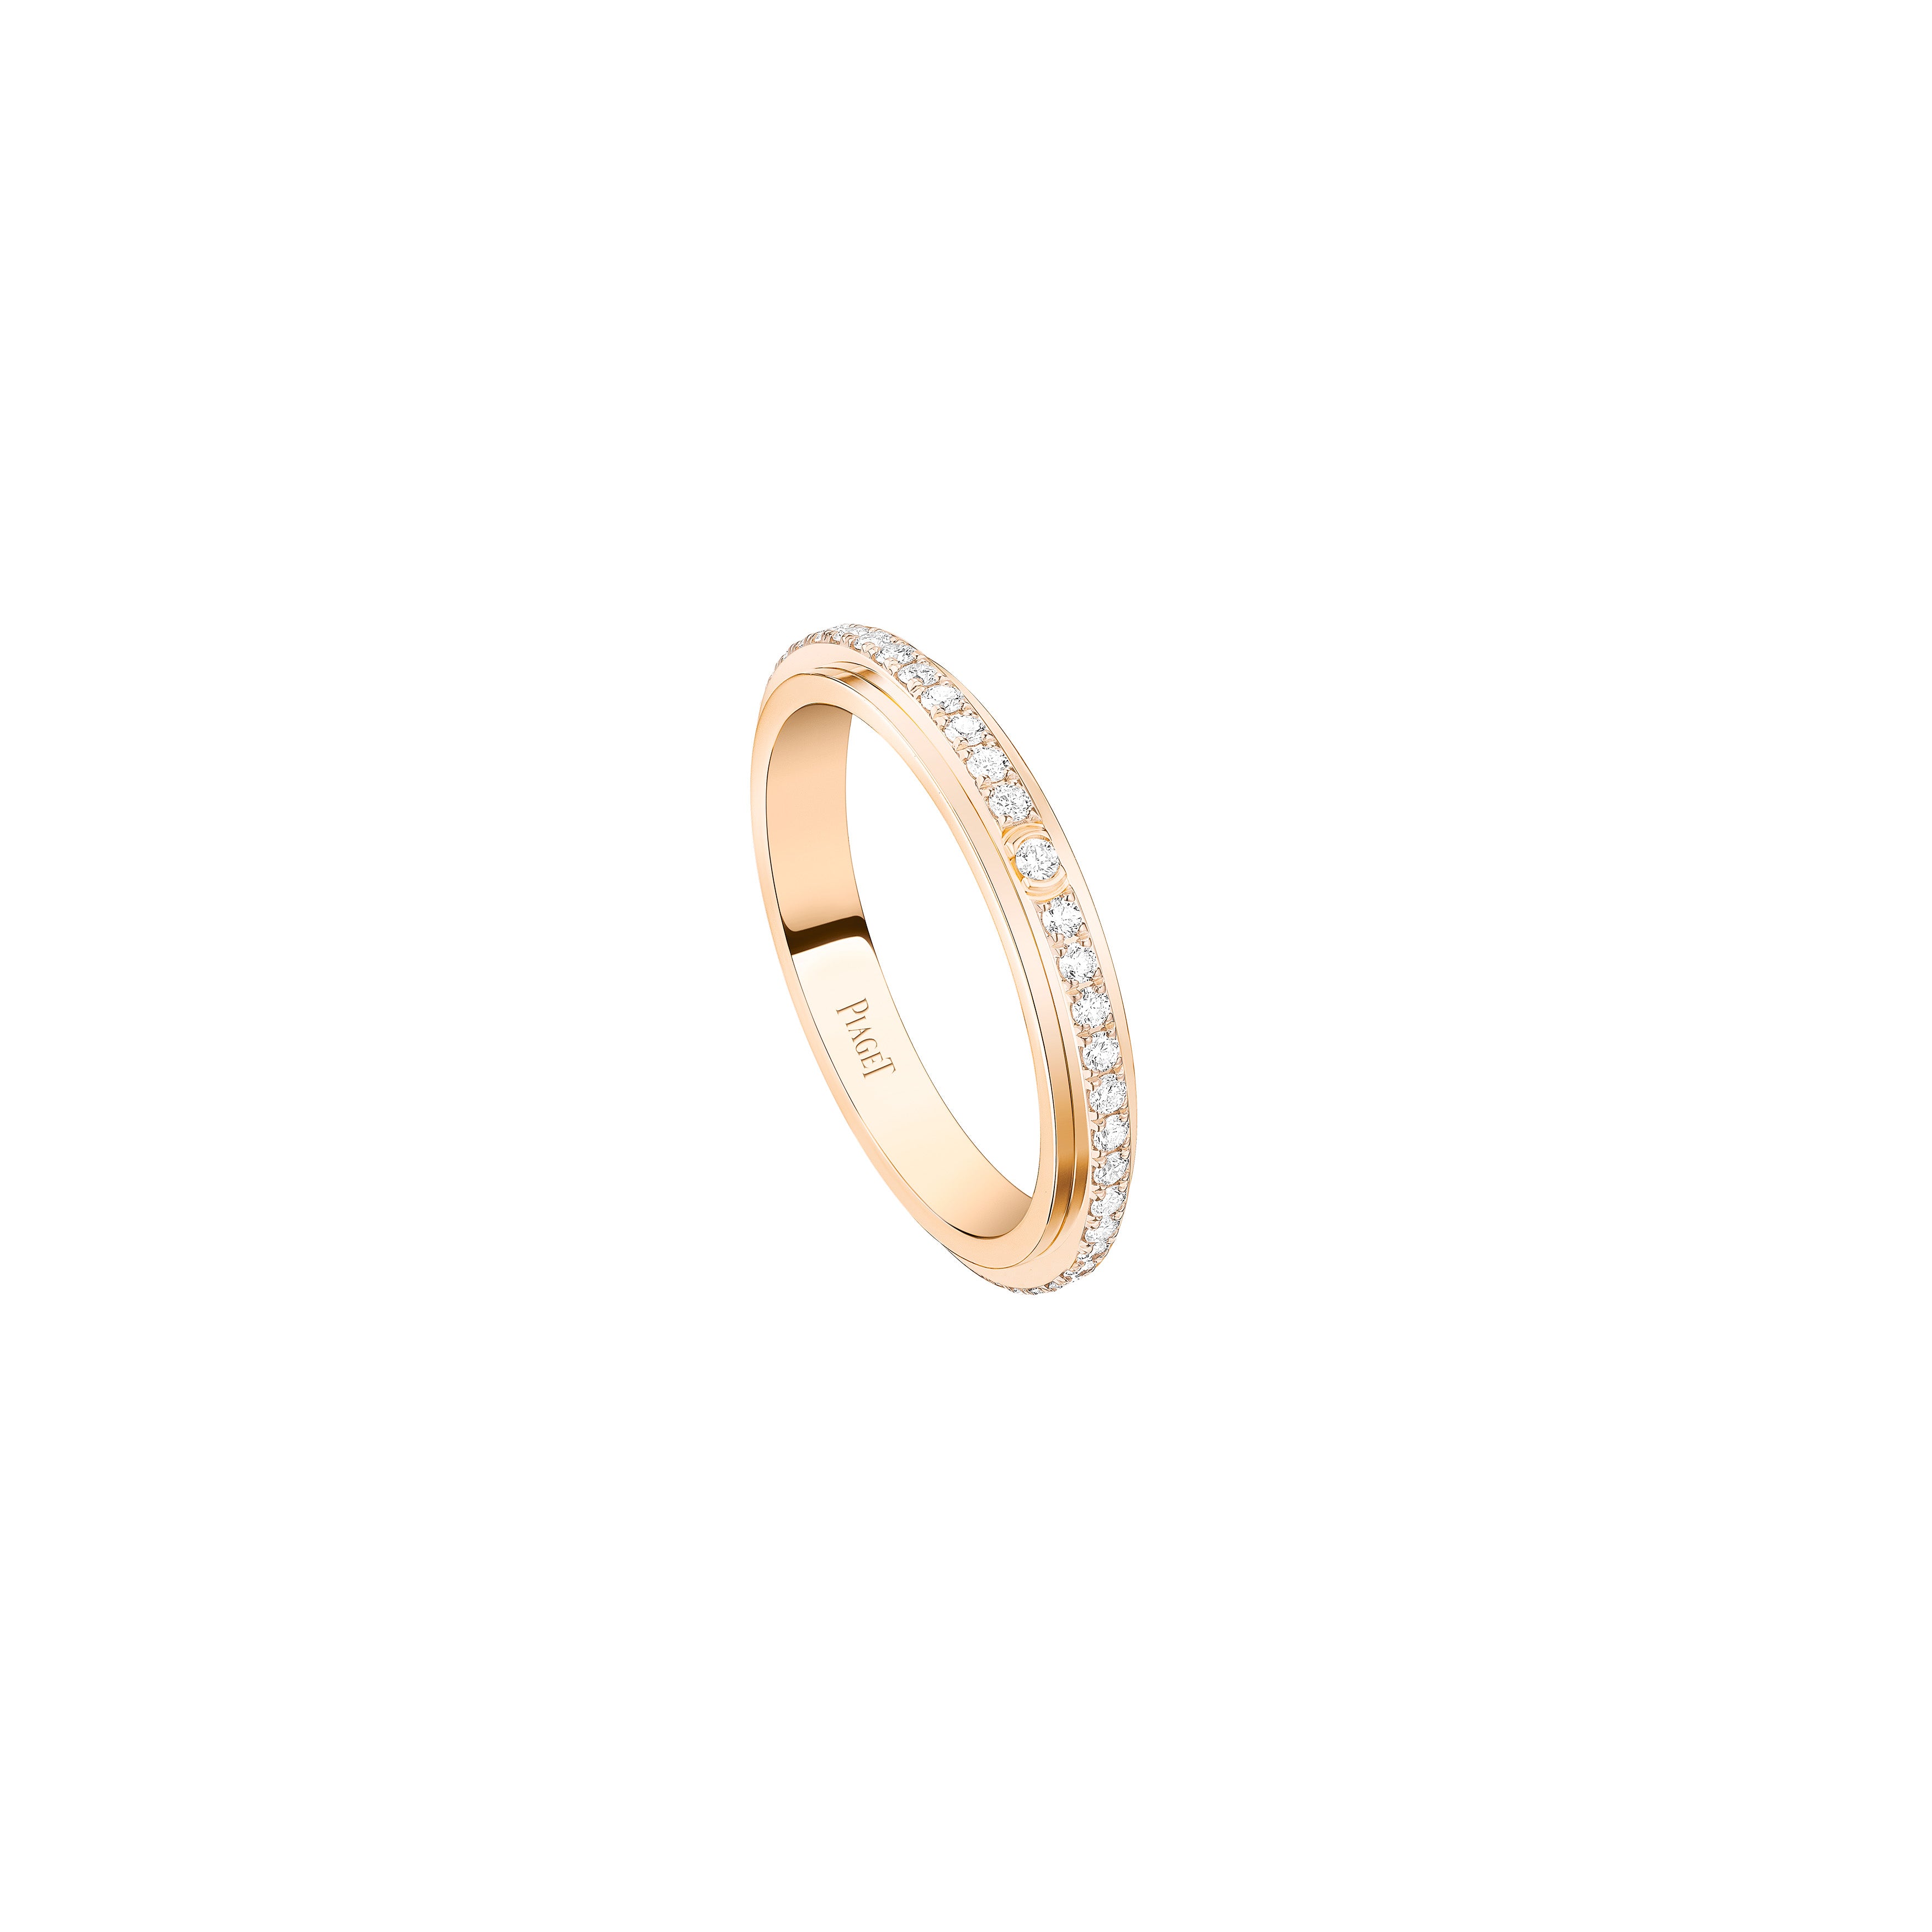 Piaget Posession 18k Rose Gold Diamond Ring G34P1M48